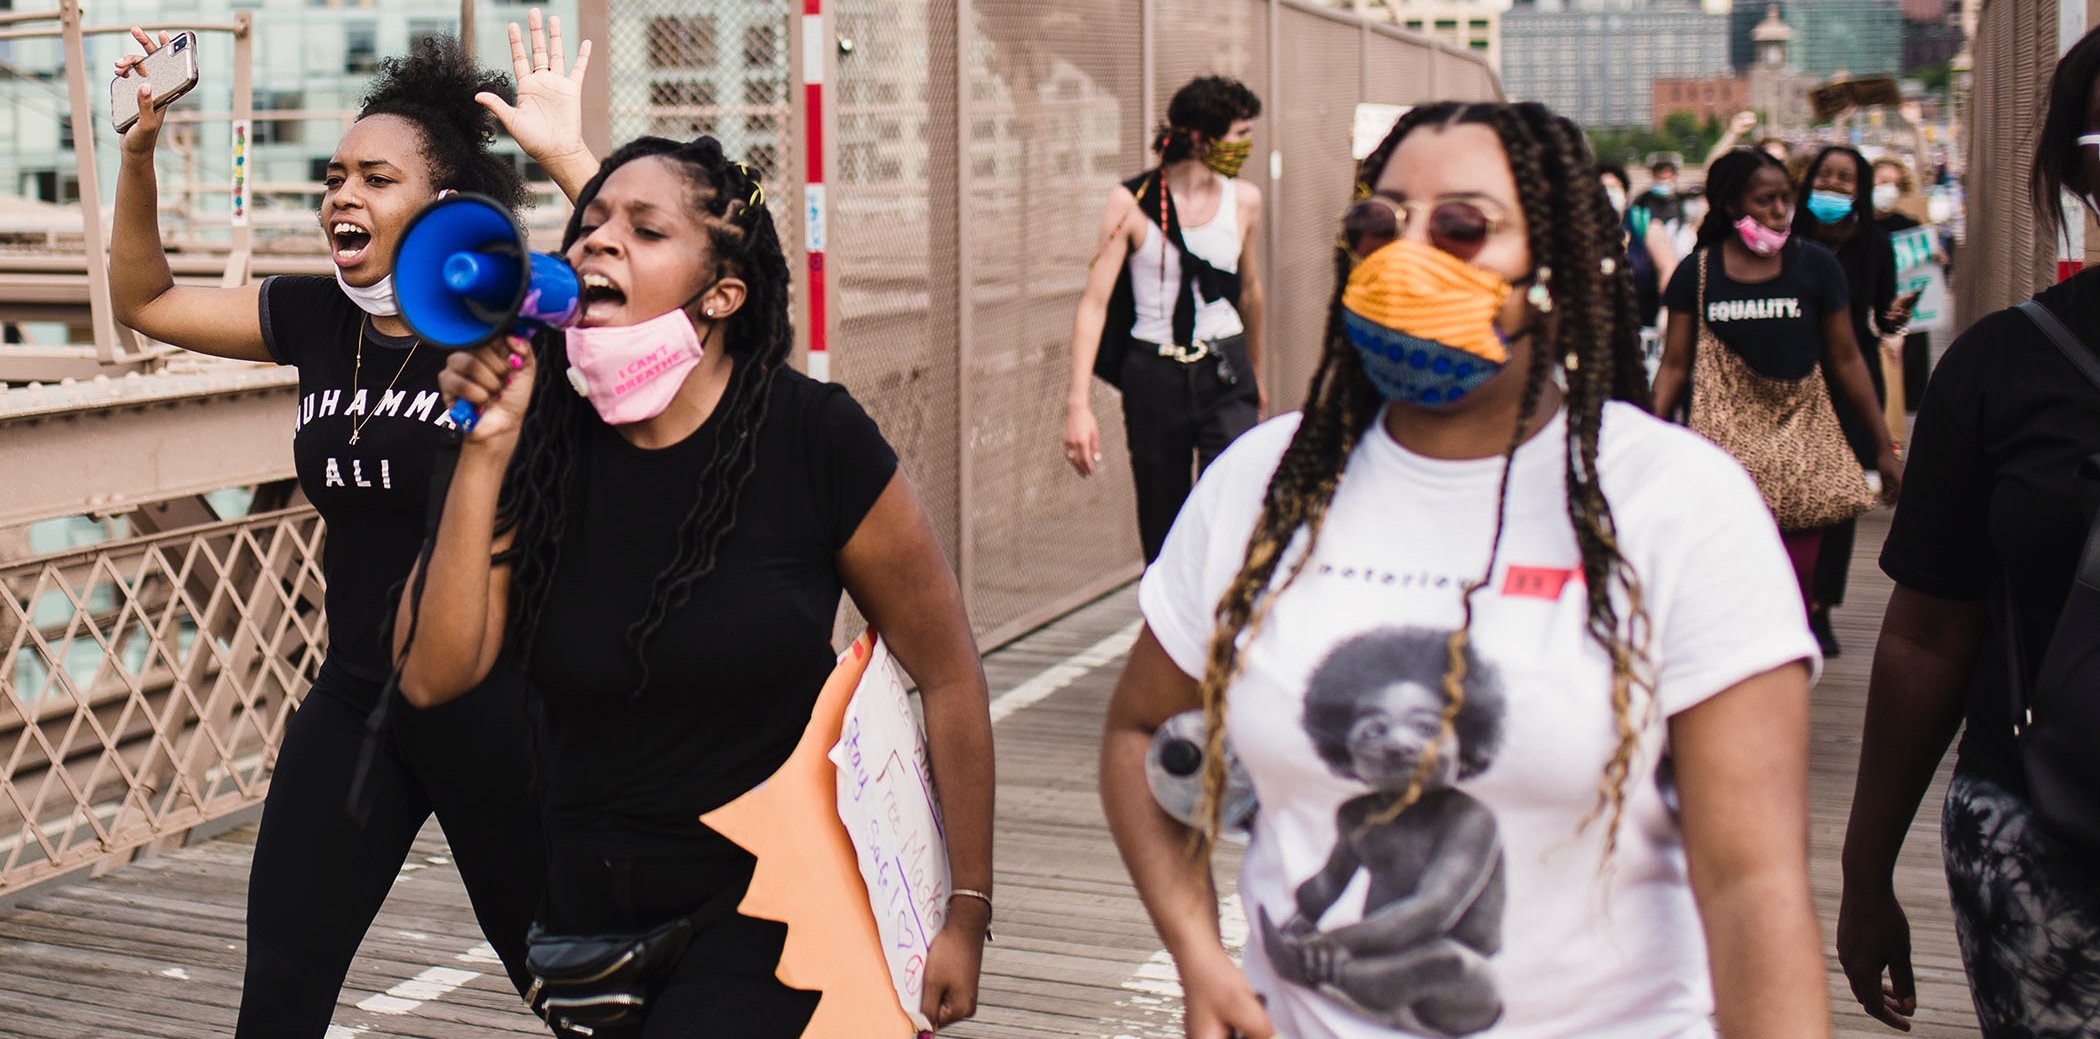 Tres mujeres jóvenes, una de ellas con un megáfono, participando en una manifestación